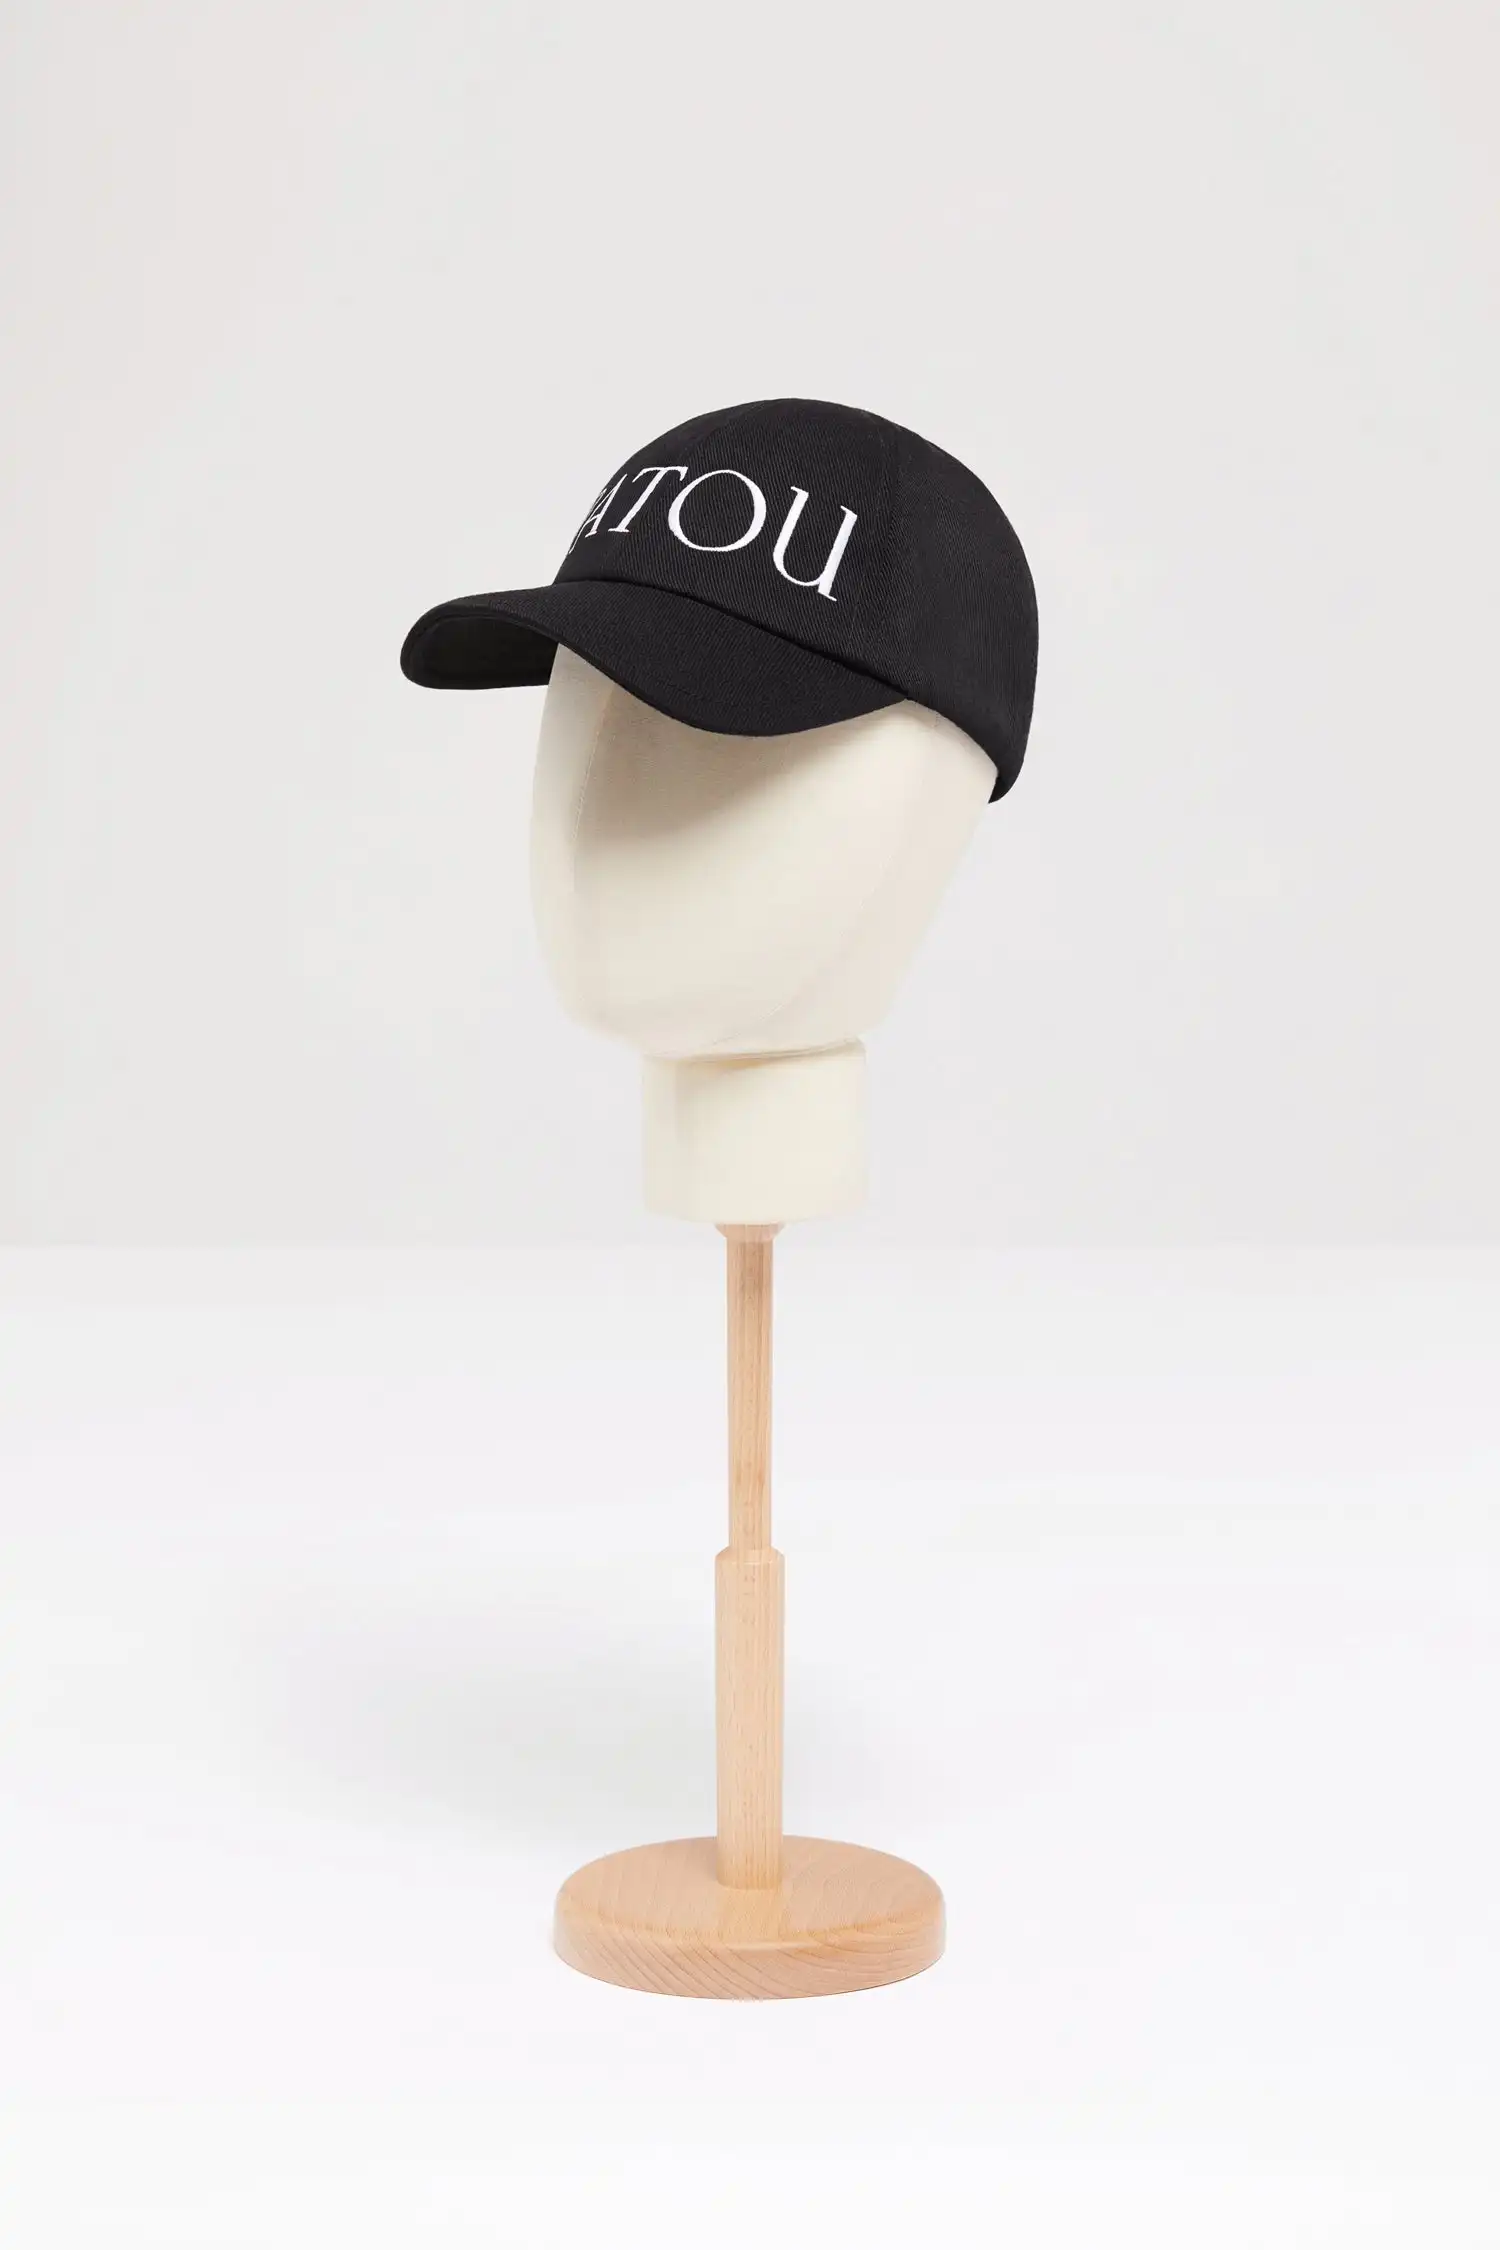 Япония Горячие продажи Элитный бренд Вышитая Бейсболка Женщины Мужчины Всесезонные Шляпы С Изогнутыми Полями Унисекс Спортивная Шляпа На Открытом Воздухе Солнцезащитный Козырек Изображение 1